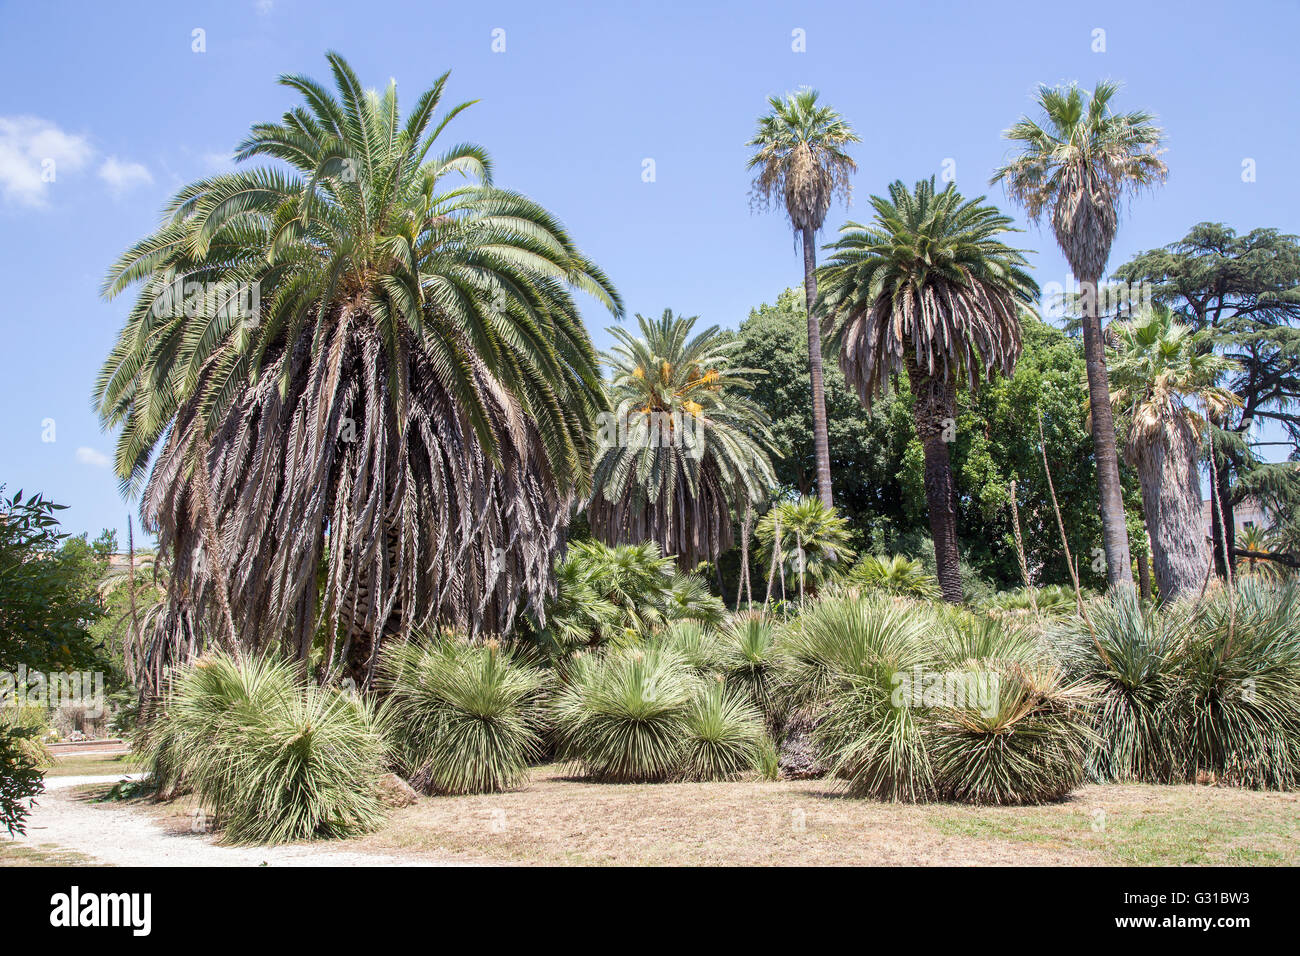 Vue sur un groupe de palmiers dans un jardin tropical Banque D'Images